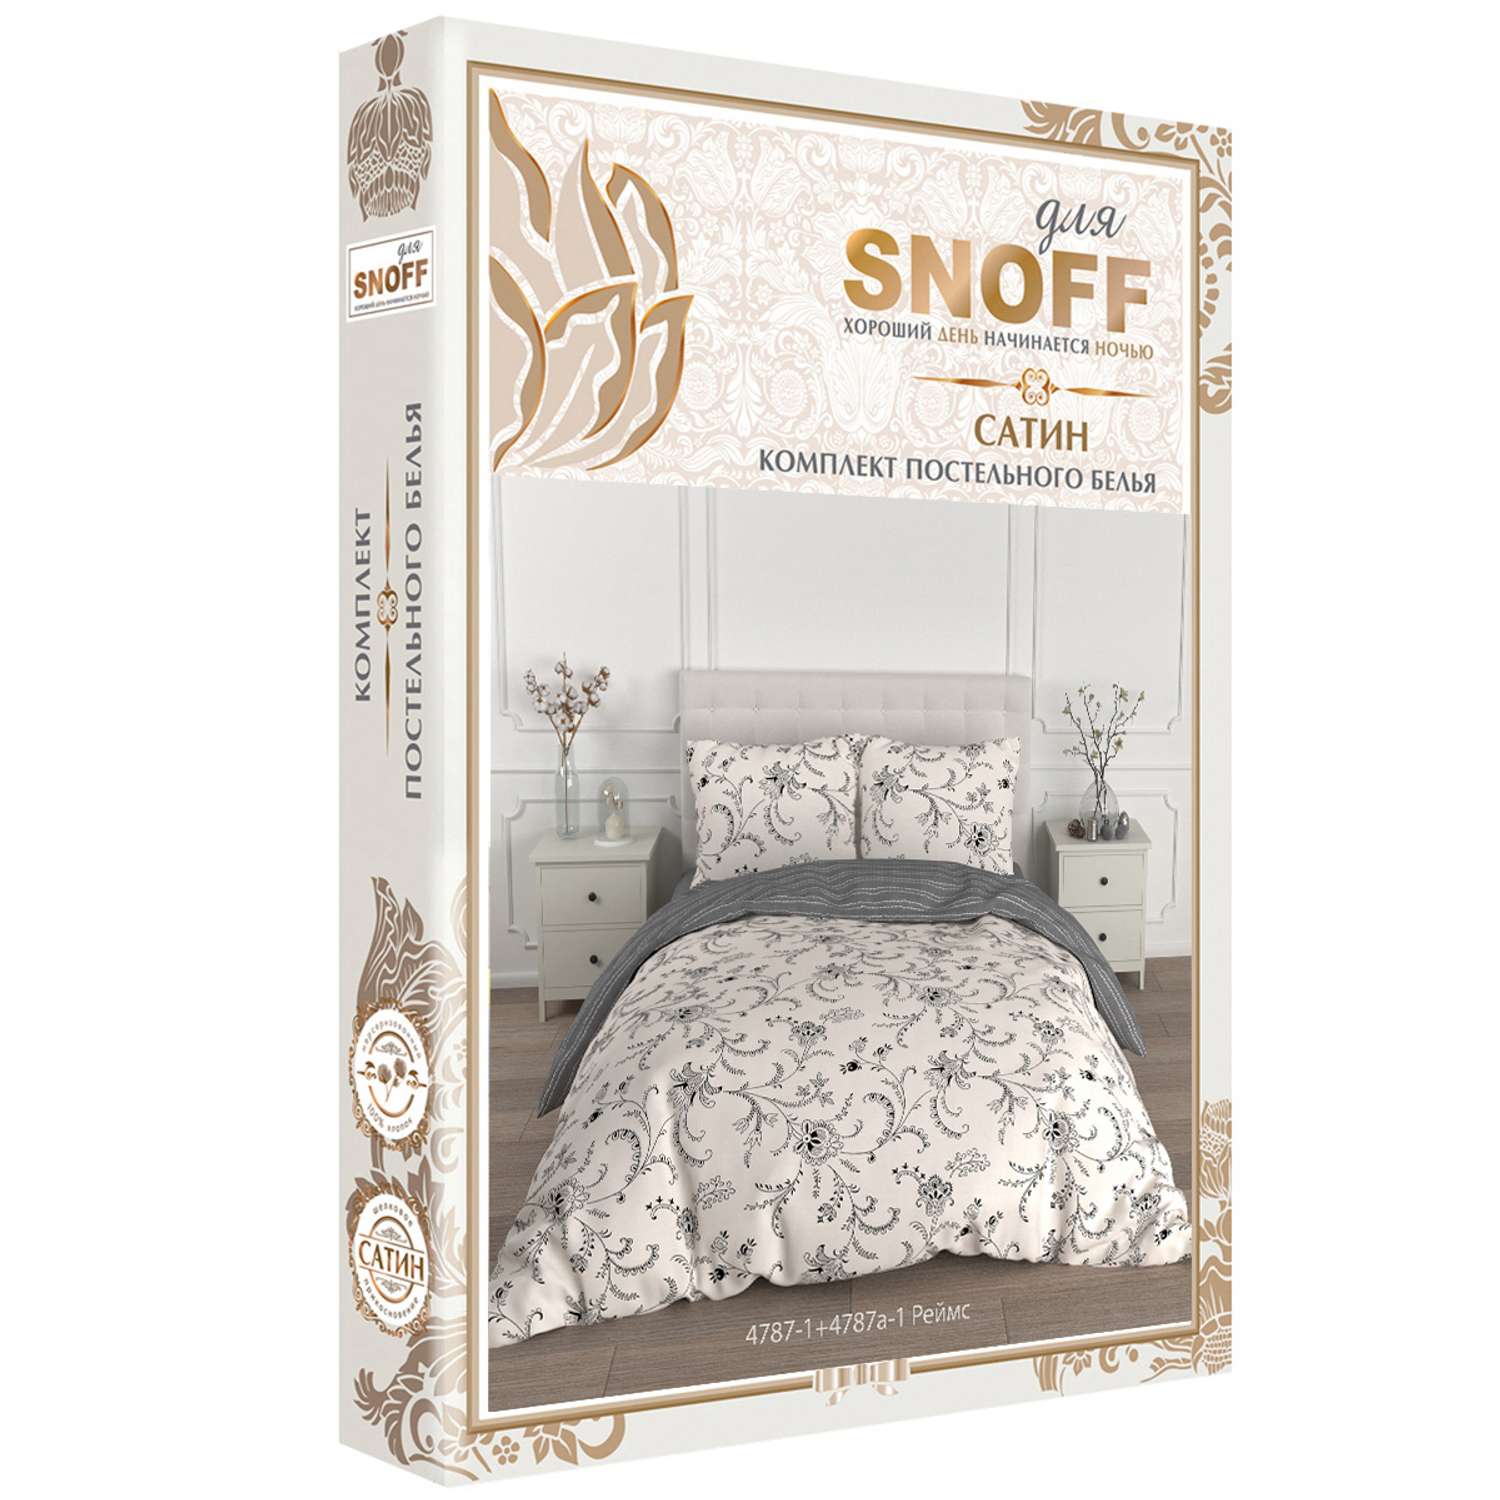 Комплект постельного белья для SNOFF Реймс 2-спальный макси сатин - фото 7